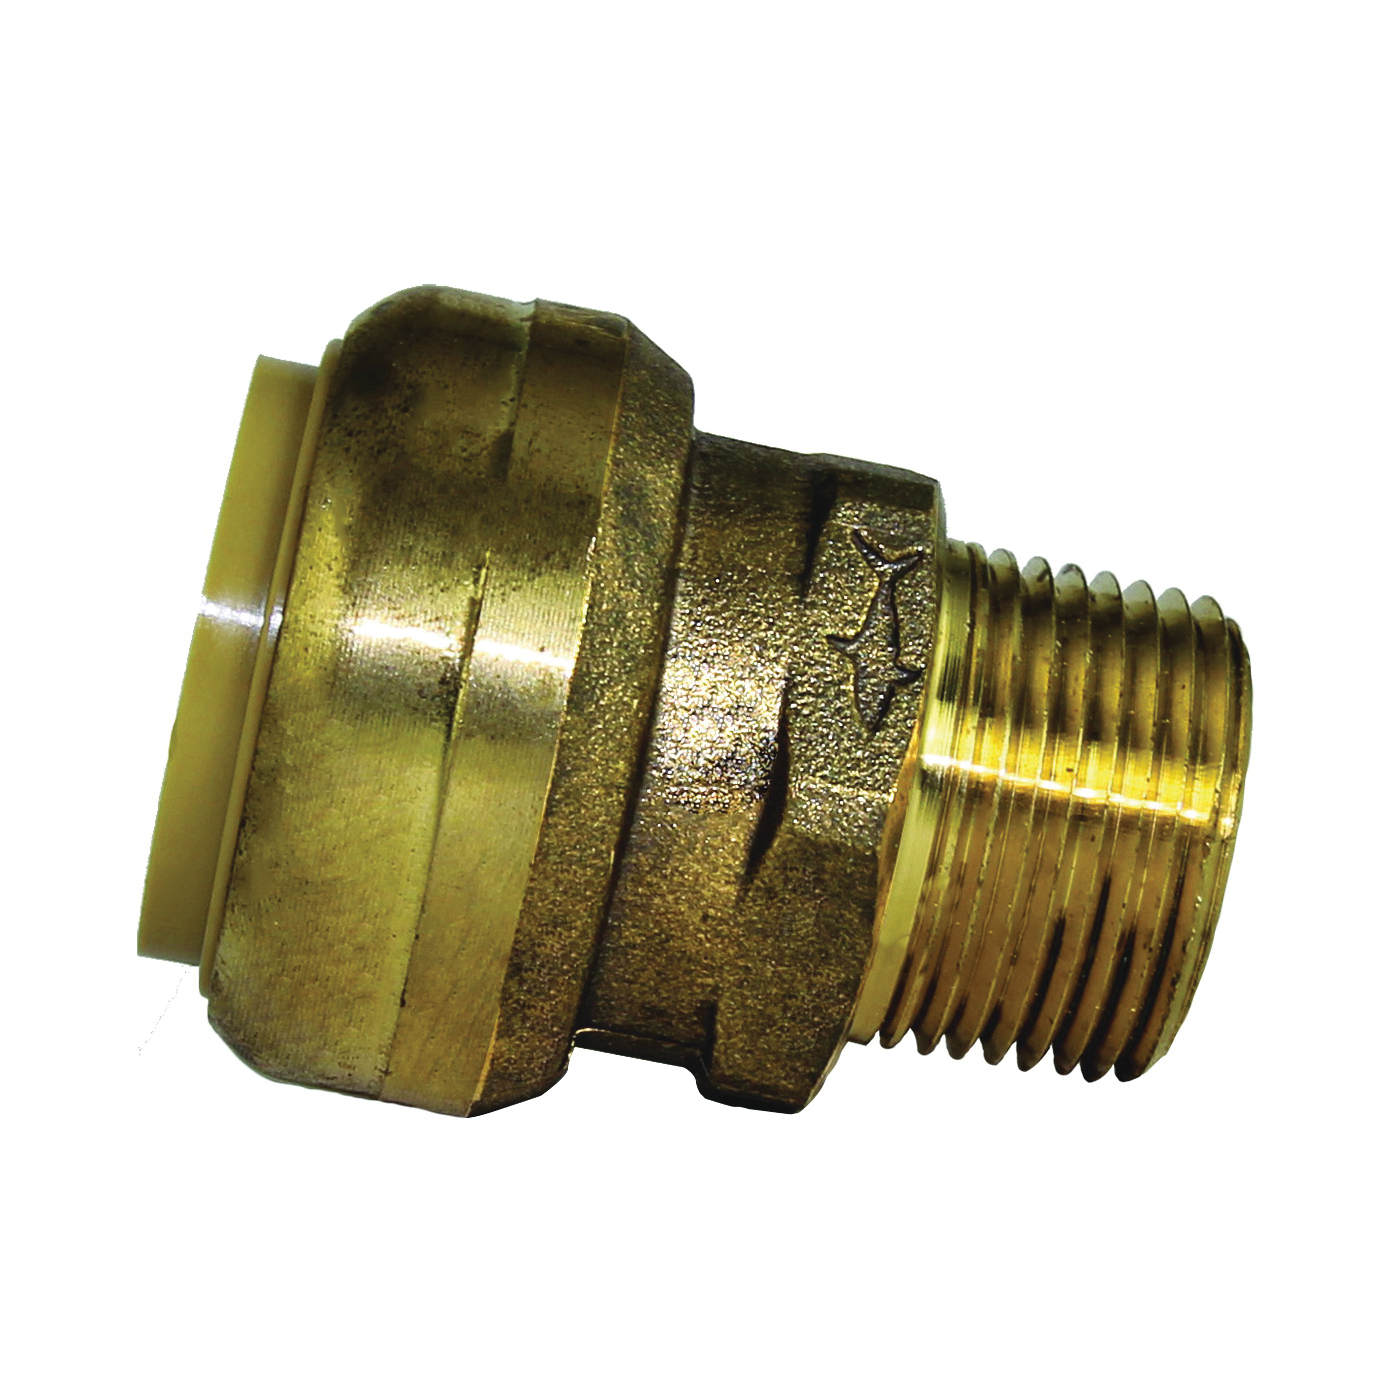 U142LFA Pipe Connector, 1 x 3/4 in, MNPT, Brass, 200 psi Pressure